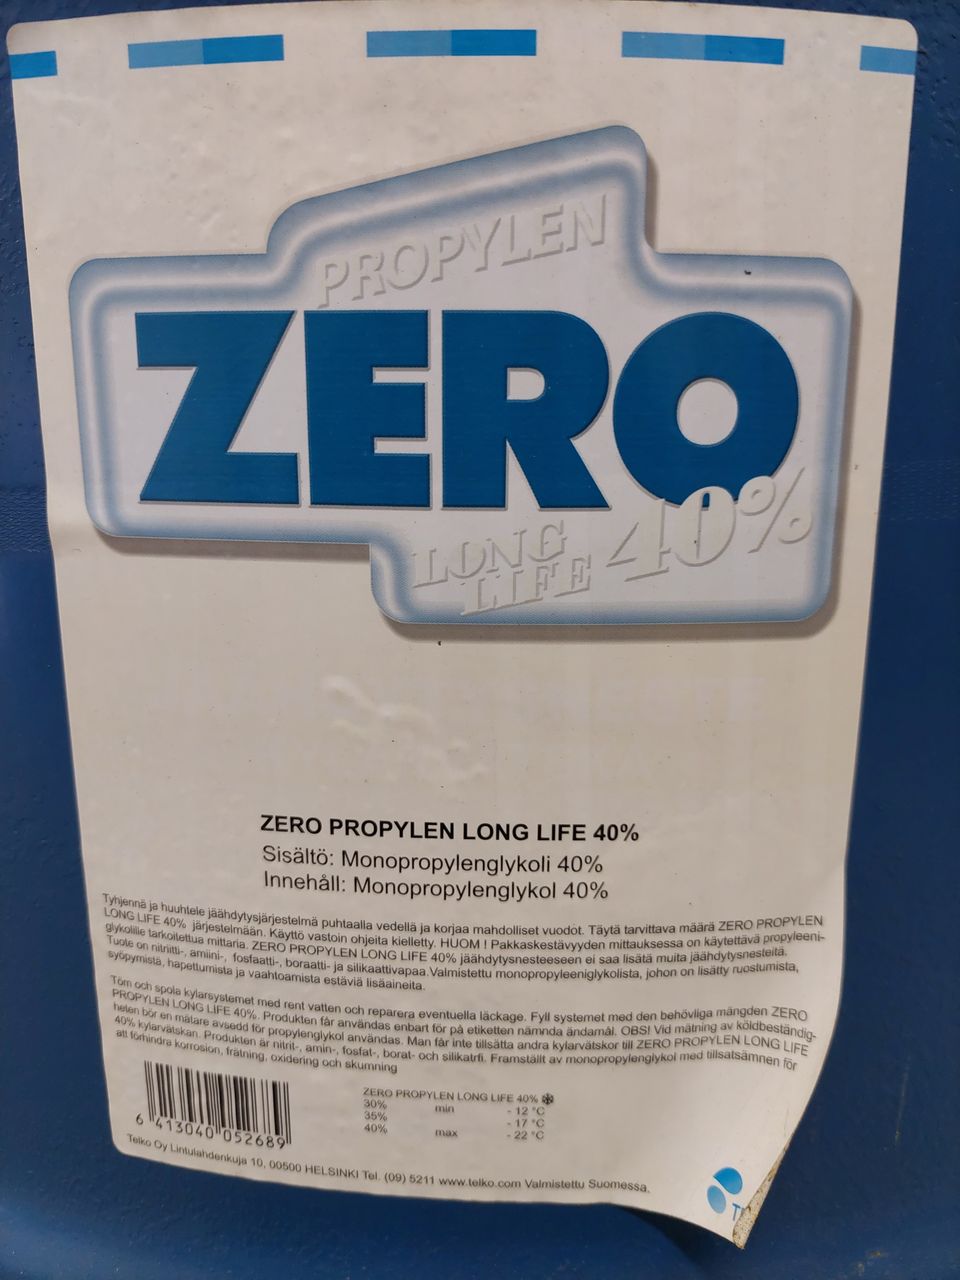 Zero propylen long life 40%